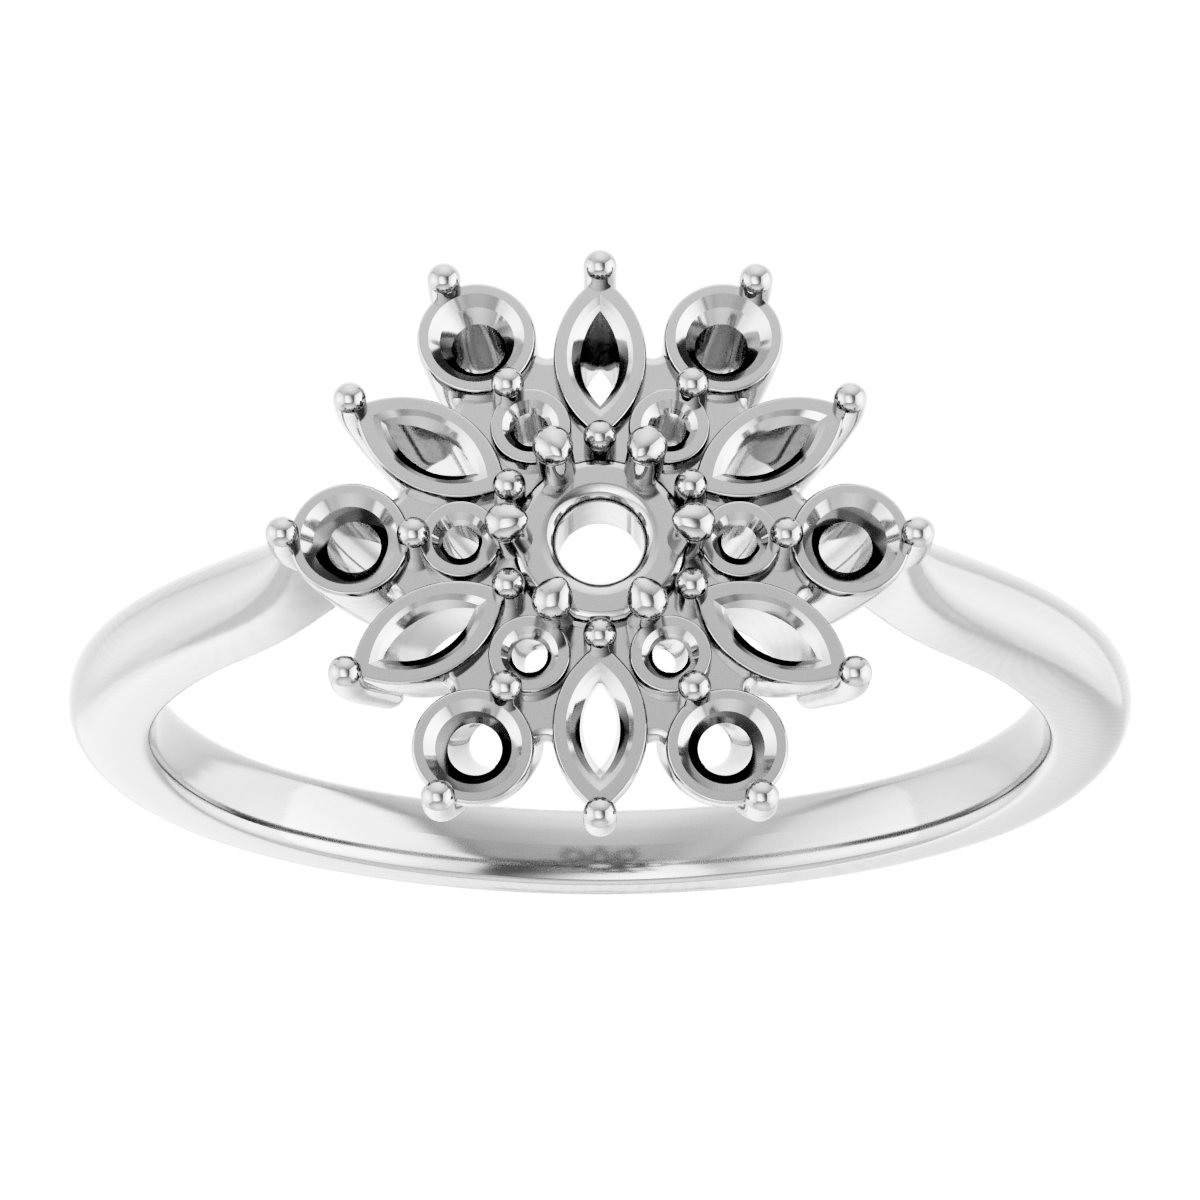 14K White 1/2 CTW Natural Diamond Vintage-Inspired Ring